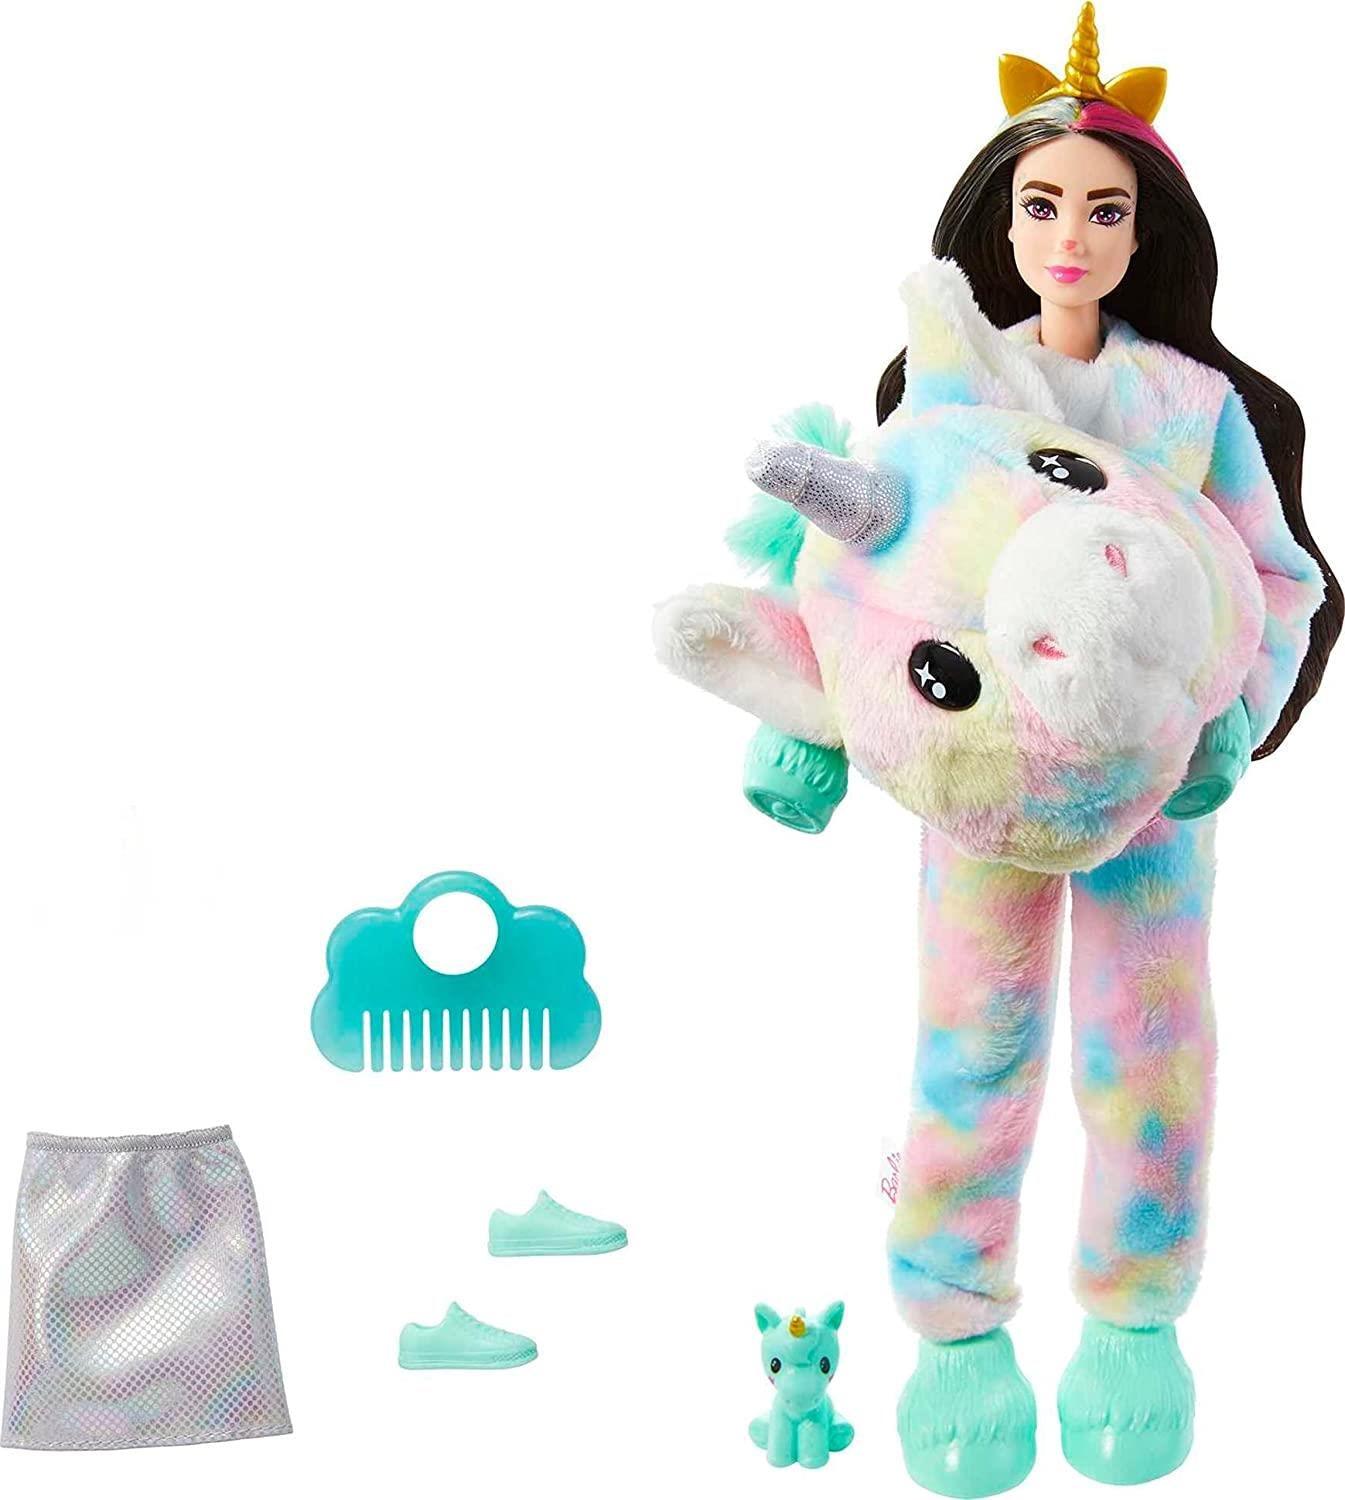 Barbie Cutie Reveal Doll with Unicorn Plush by Barbie - UKBuyZone